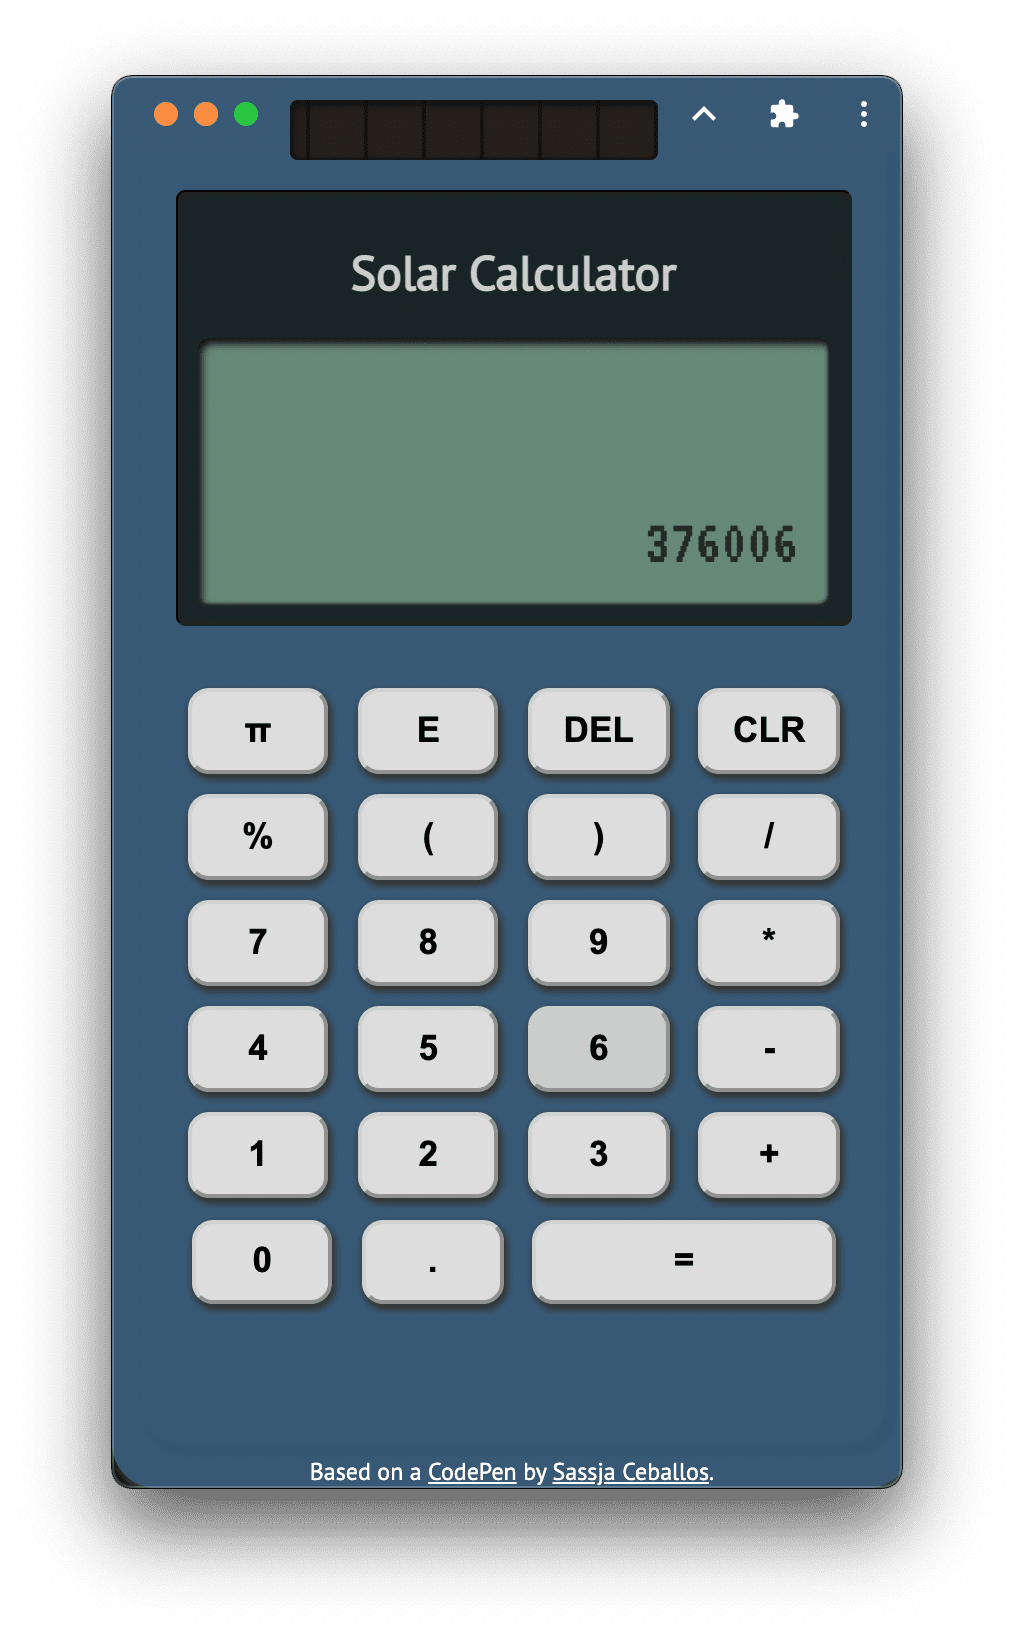 स्टैंडअलोन मोड में चल रहा Designcember Calculator, जिसके साथ विंडो कंट्रोल ओवरले की सुविधा चालू है. डिस्प्ले पर कैलकुलेटर के अक्षर में &#39;Google&#39; लिखा हुआ दिखता है.